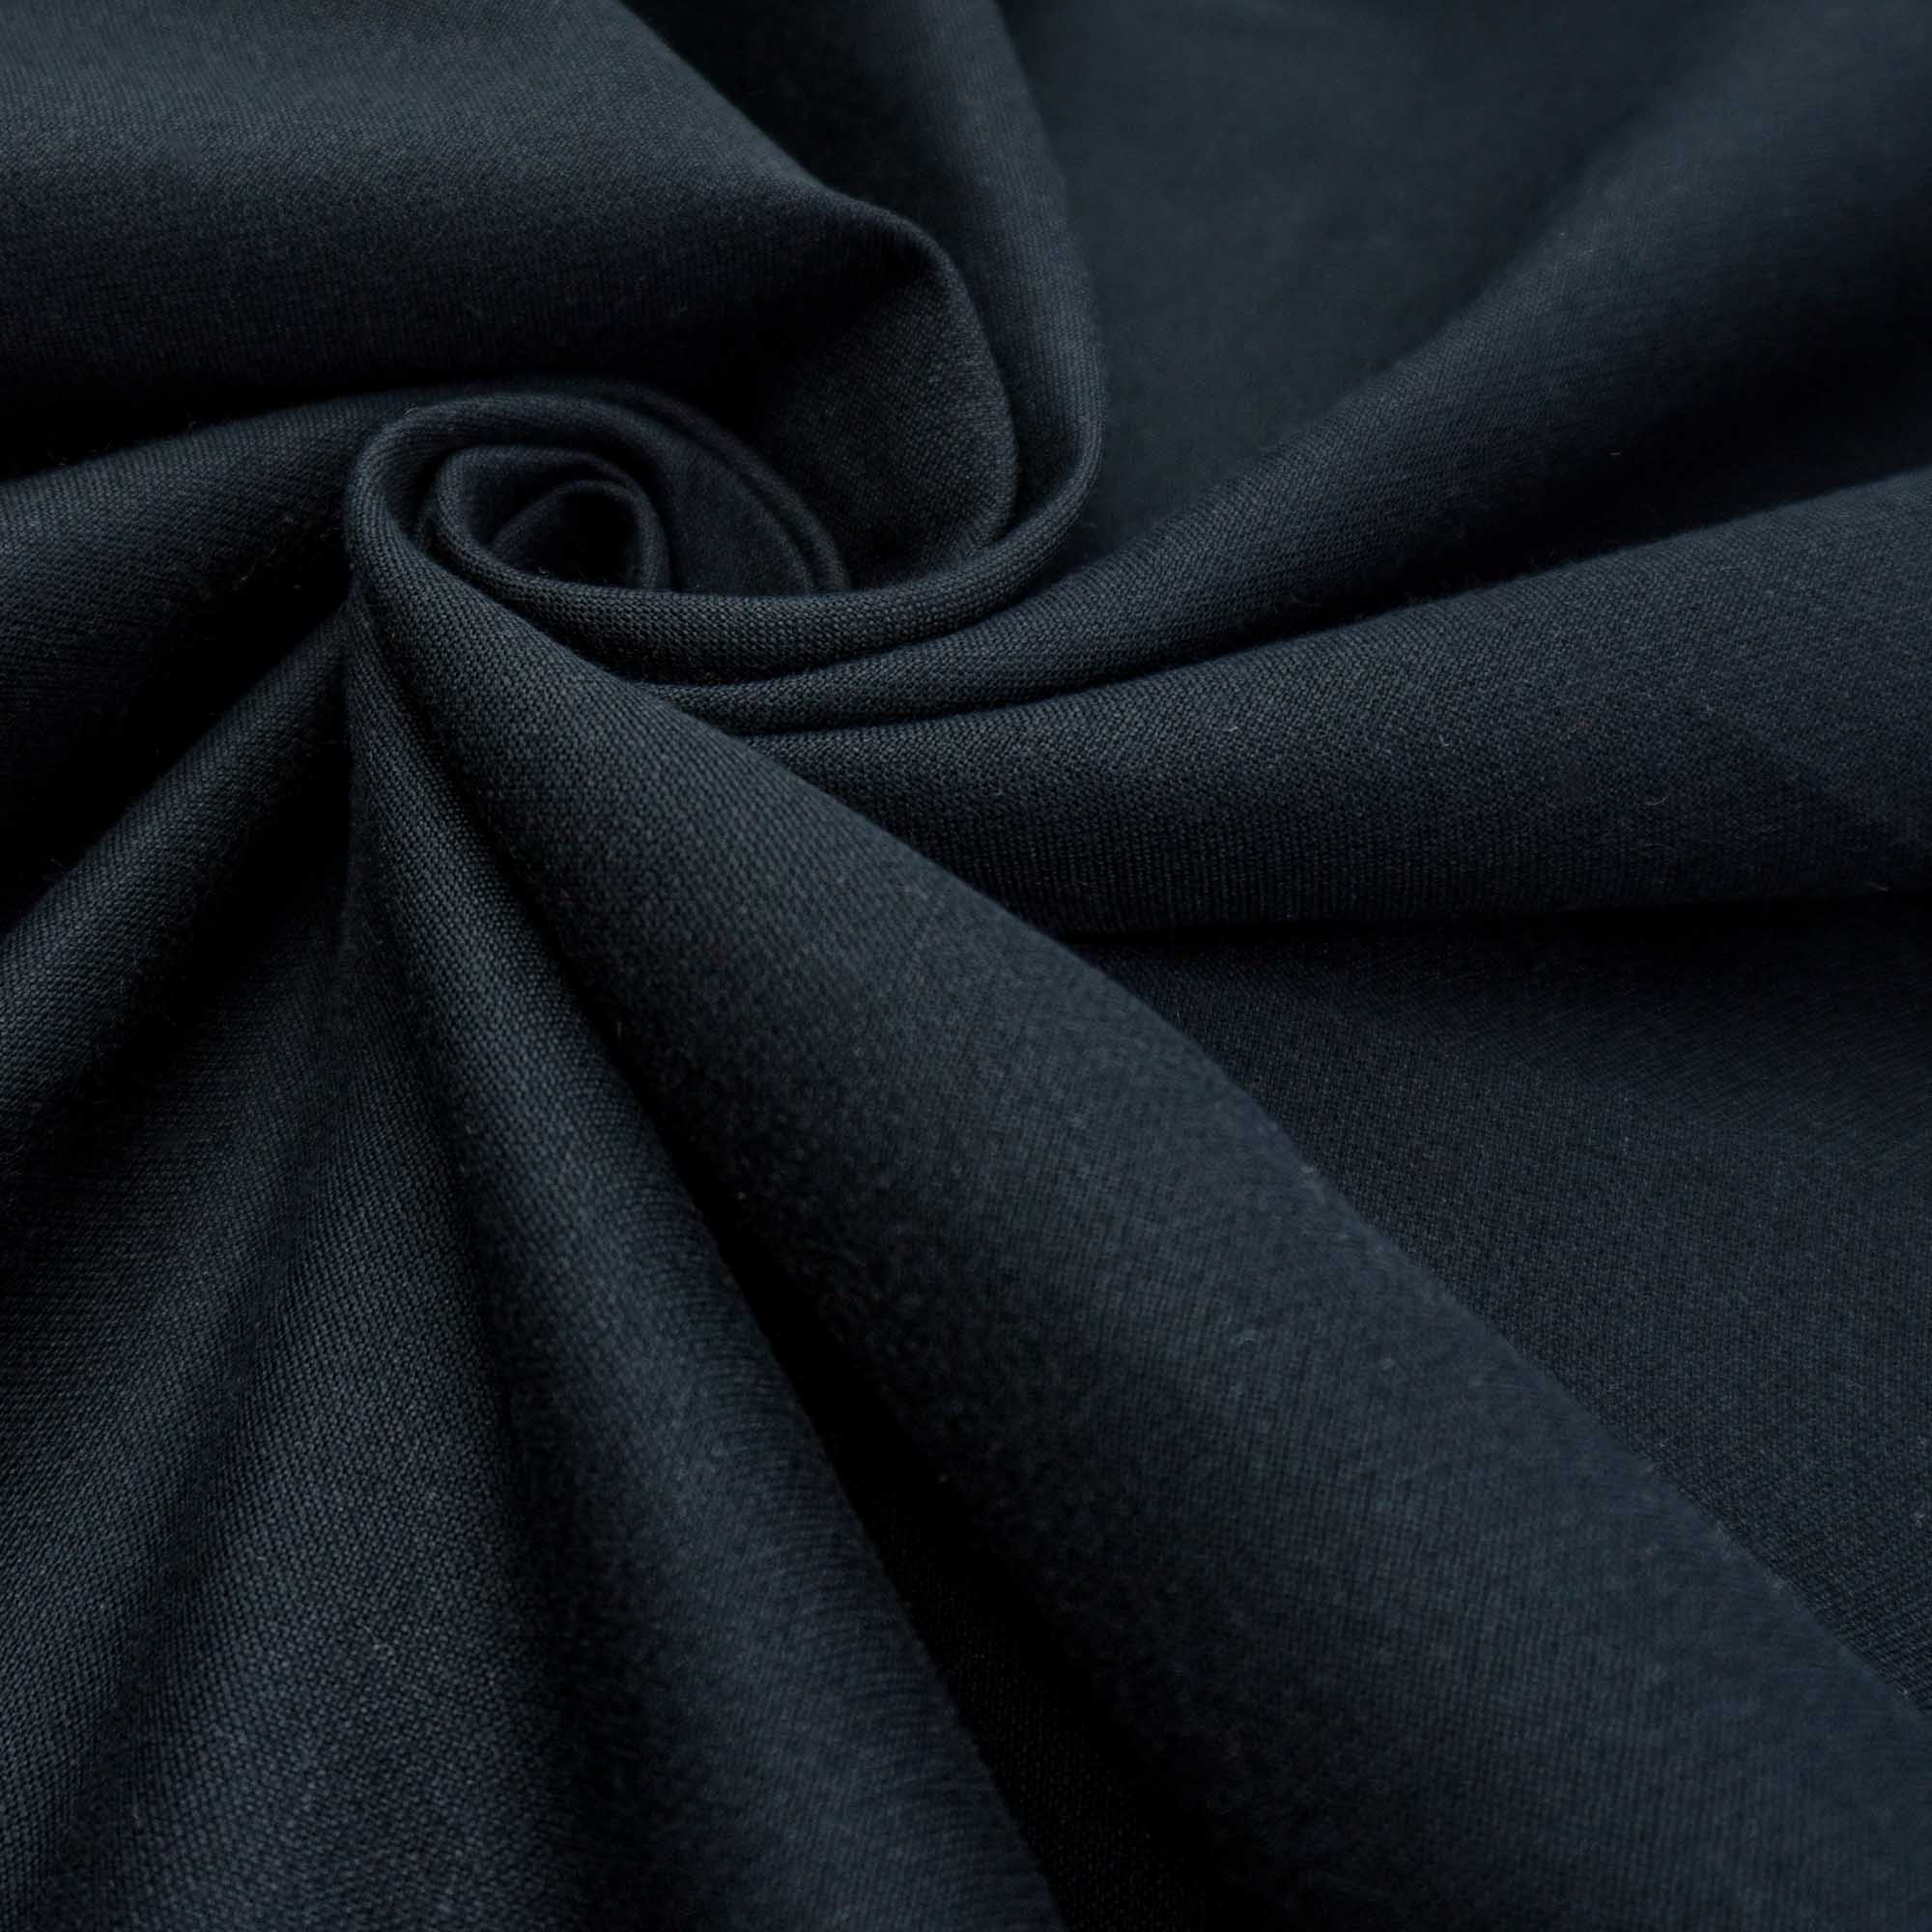 Tecido alfaiataria italiana com textura de linho preto (tecido italiano legítimo)